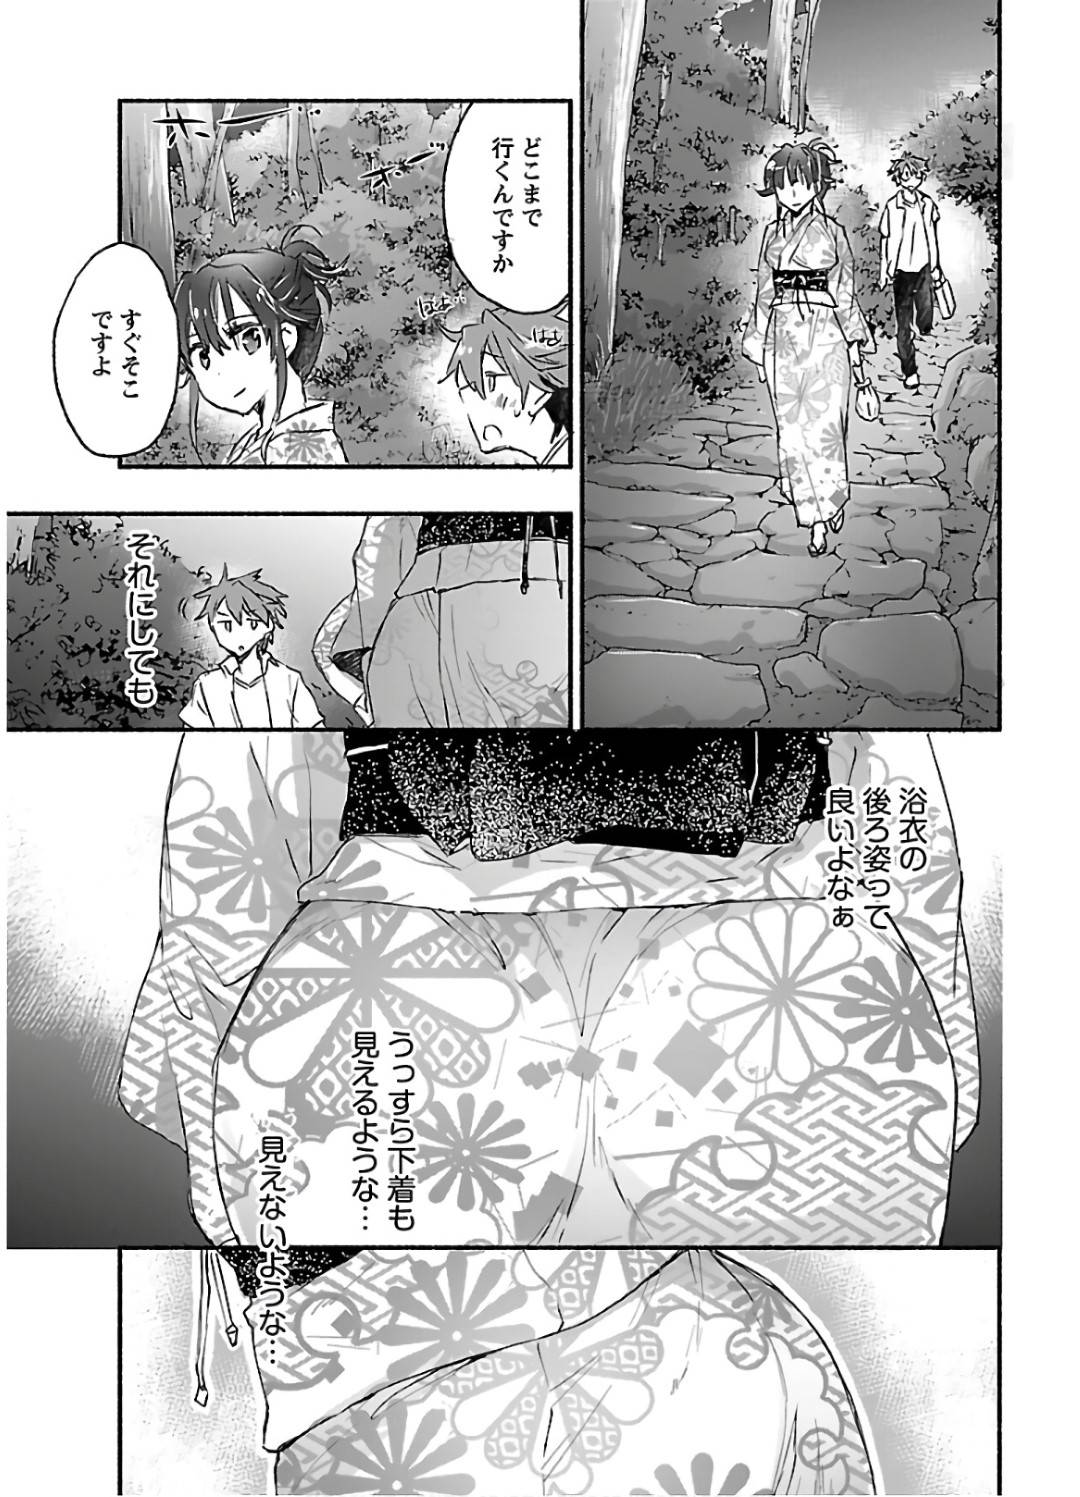 【エロ漫画】リゾート地で勉強合宿に来ていた遠藤は、勉強後、露天風呂がある事を知り蓮城の入浴姿を覗くとセックスする妄想をしてしまう【ジェームスほたて】